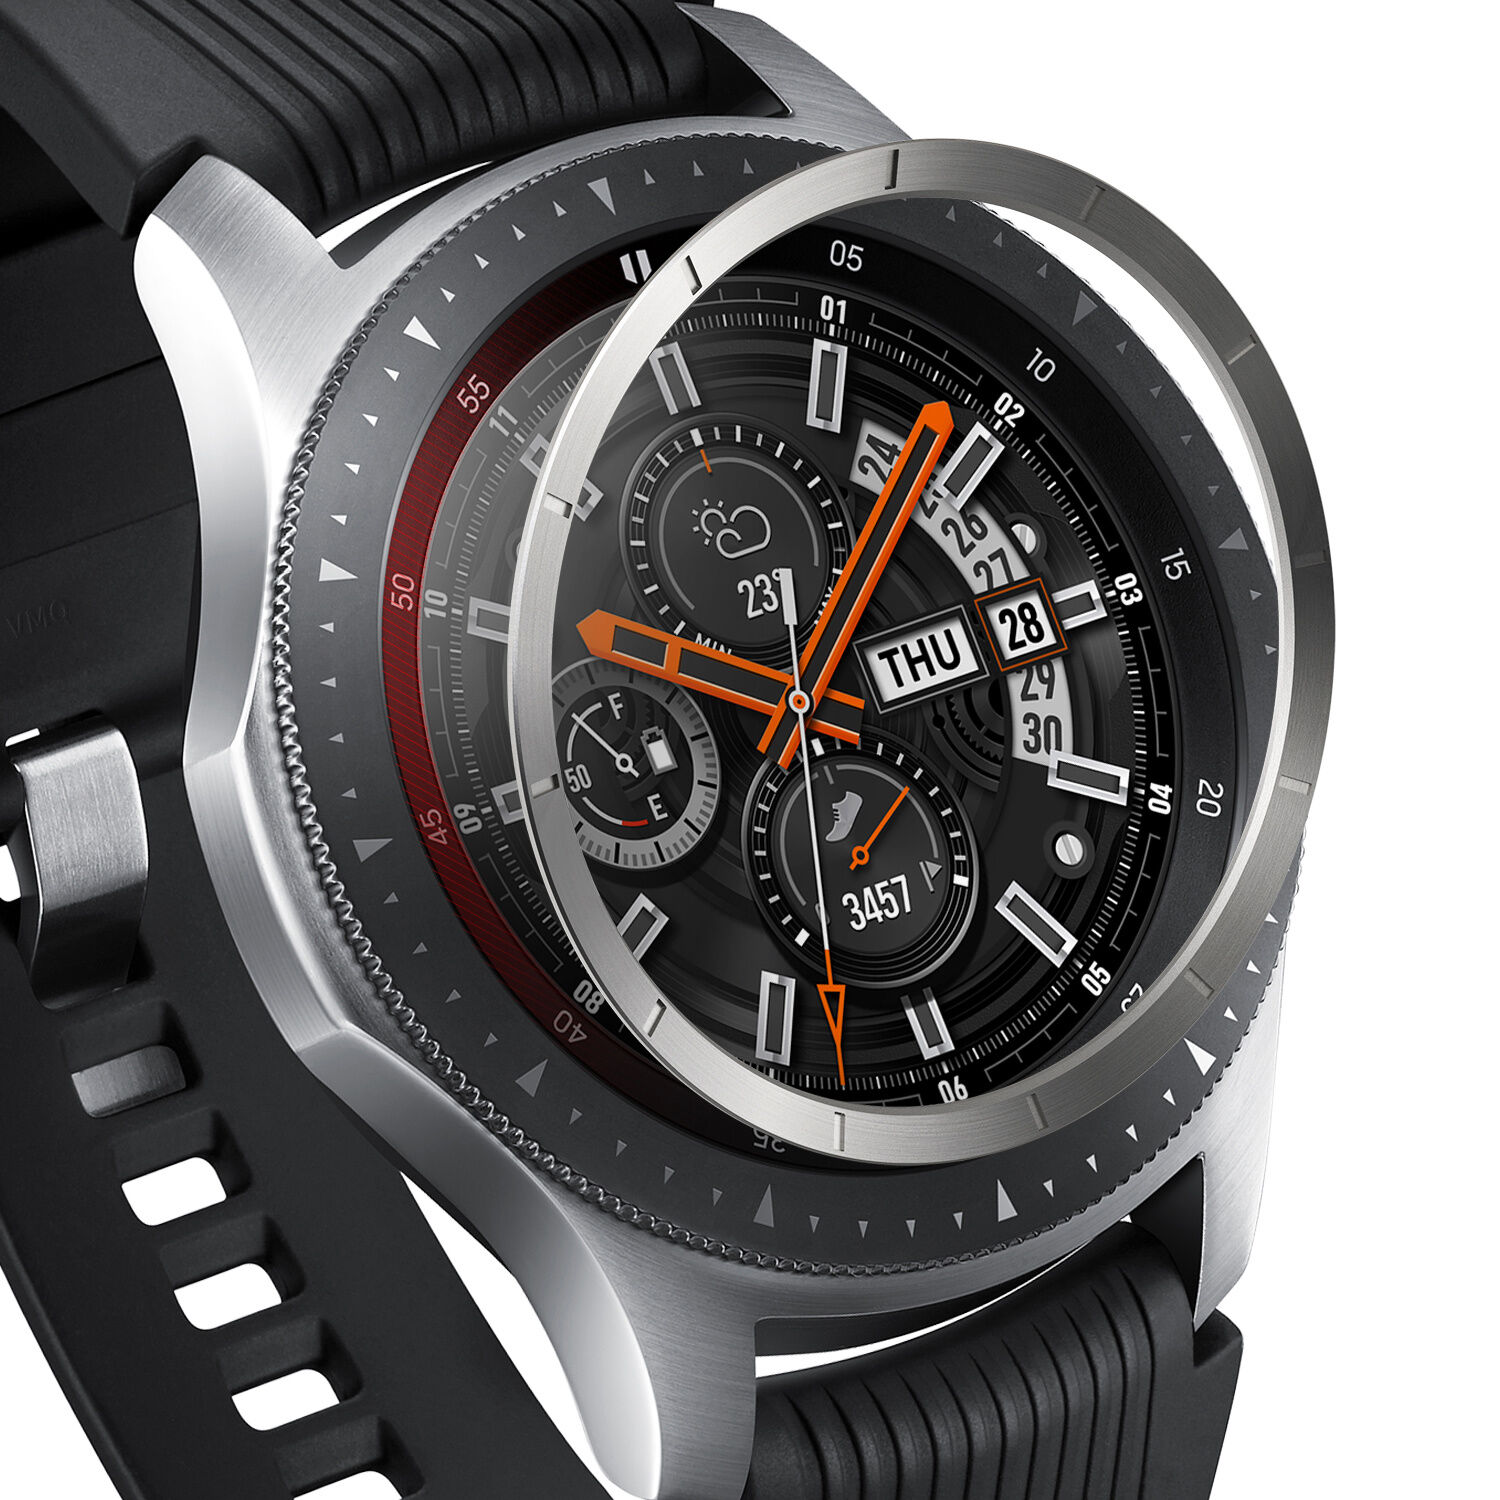 Ringke Style de lunette interne Galaxy Watch 46mm / Gear S3 Frontier / S3 Classic - Argent